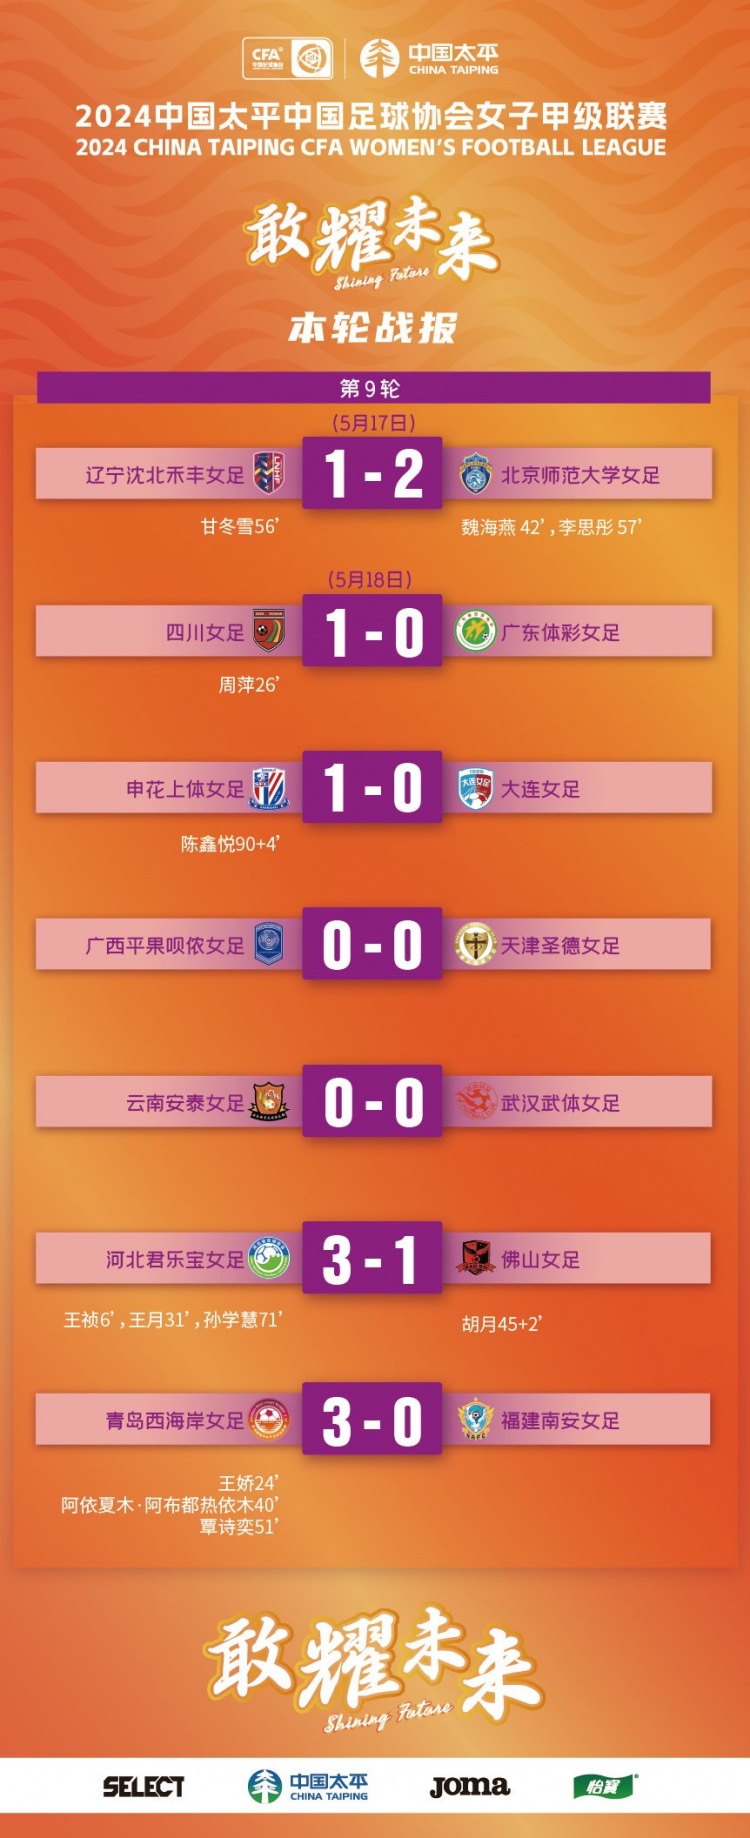 2024中国太平女甲联赛第9轮战报、积分榜、射手榜